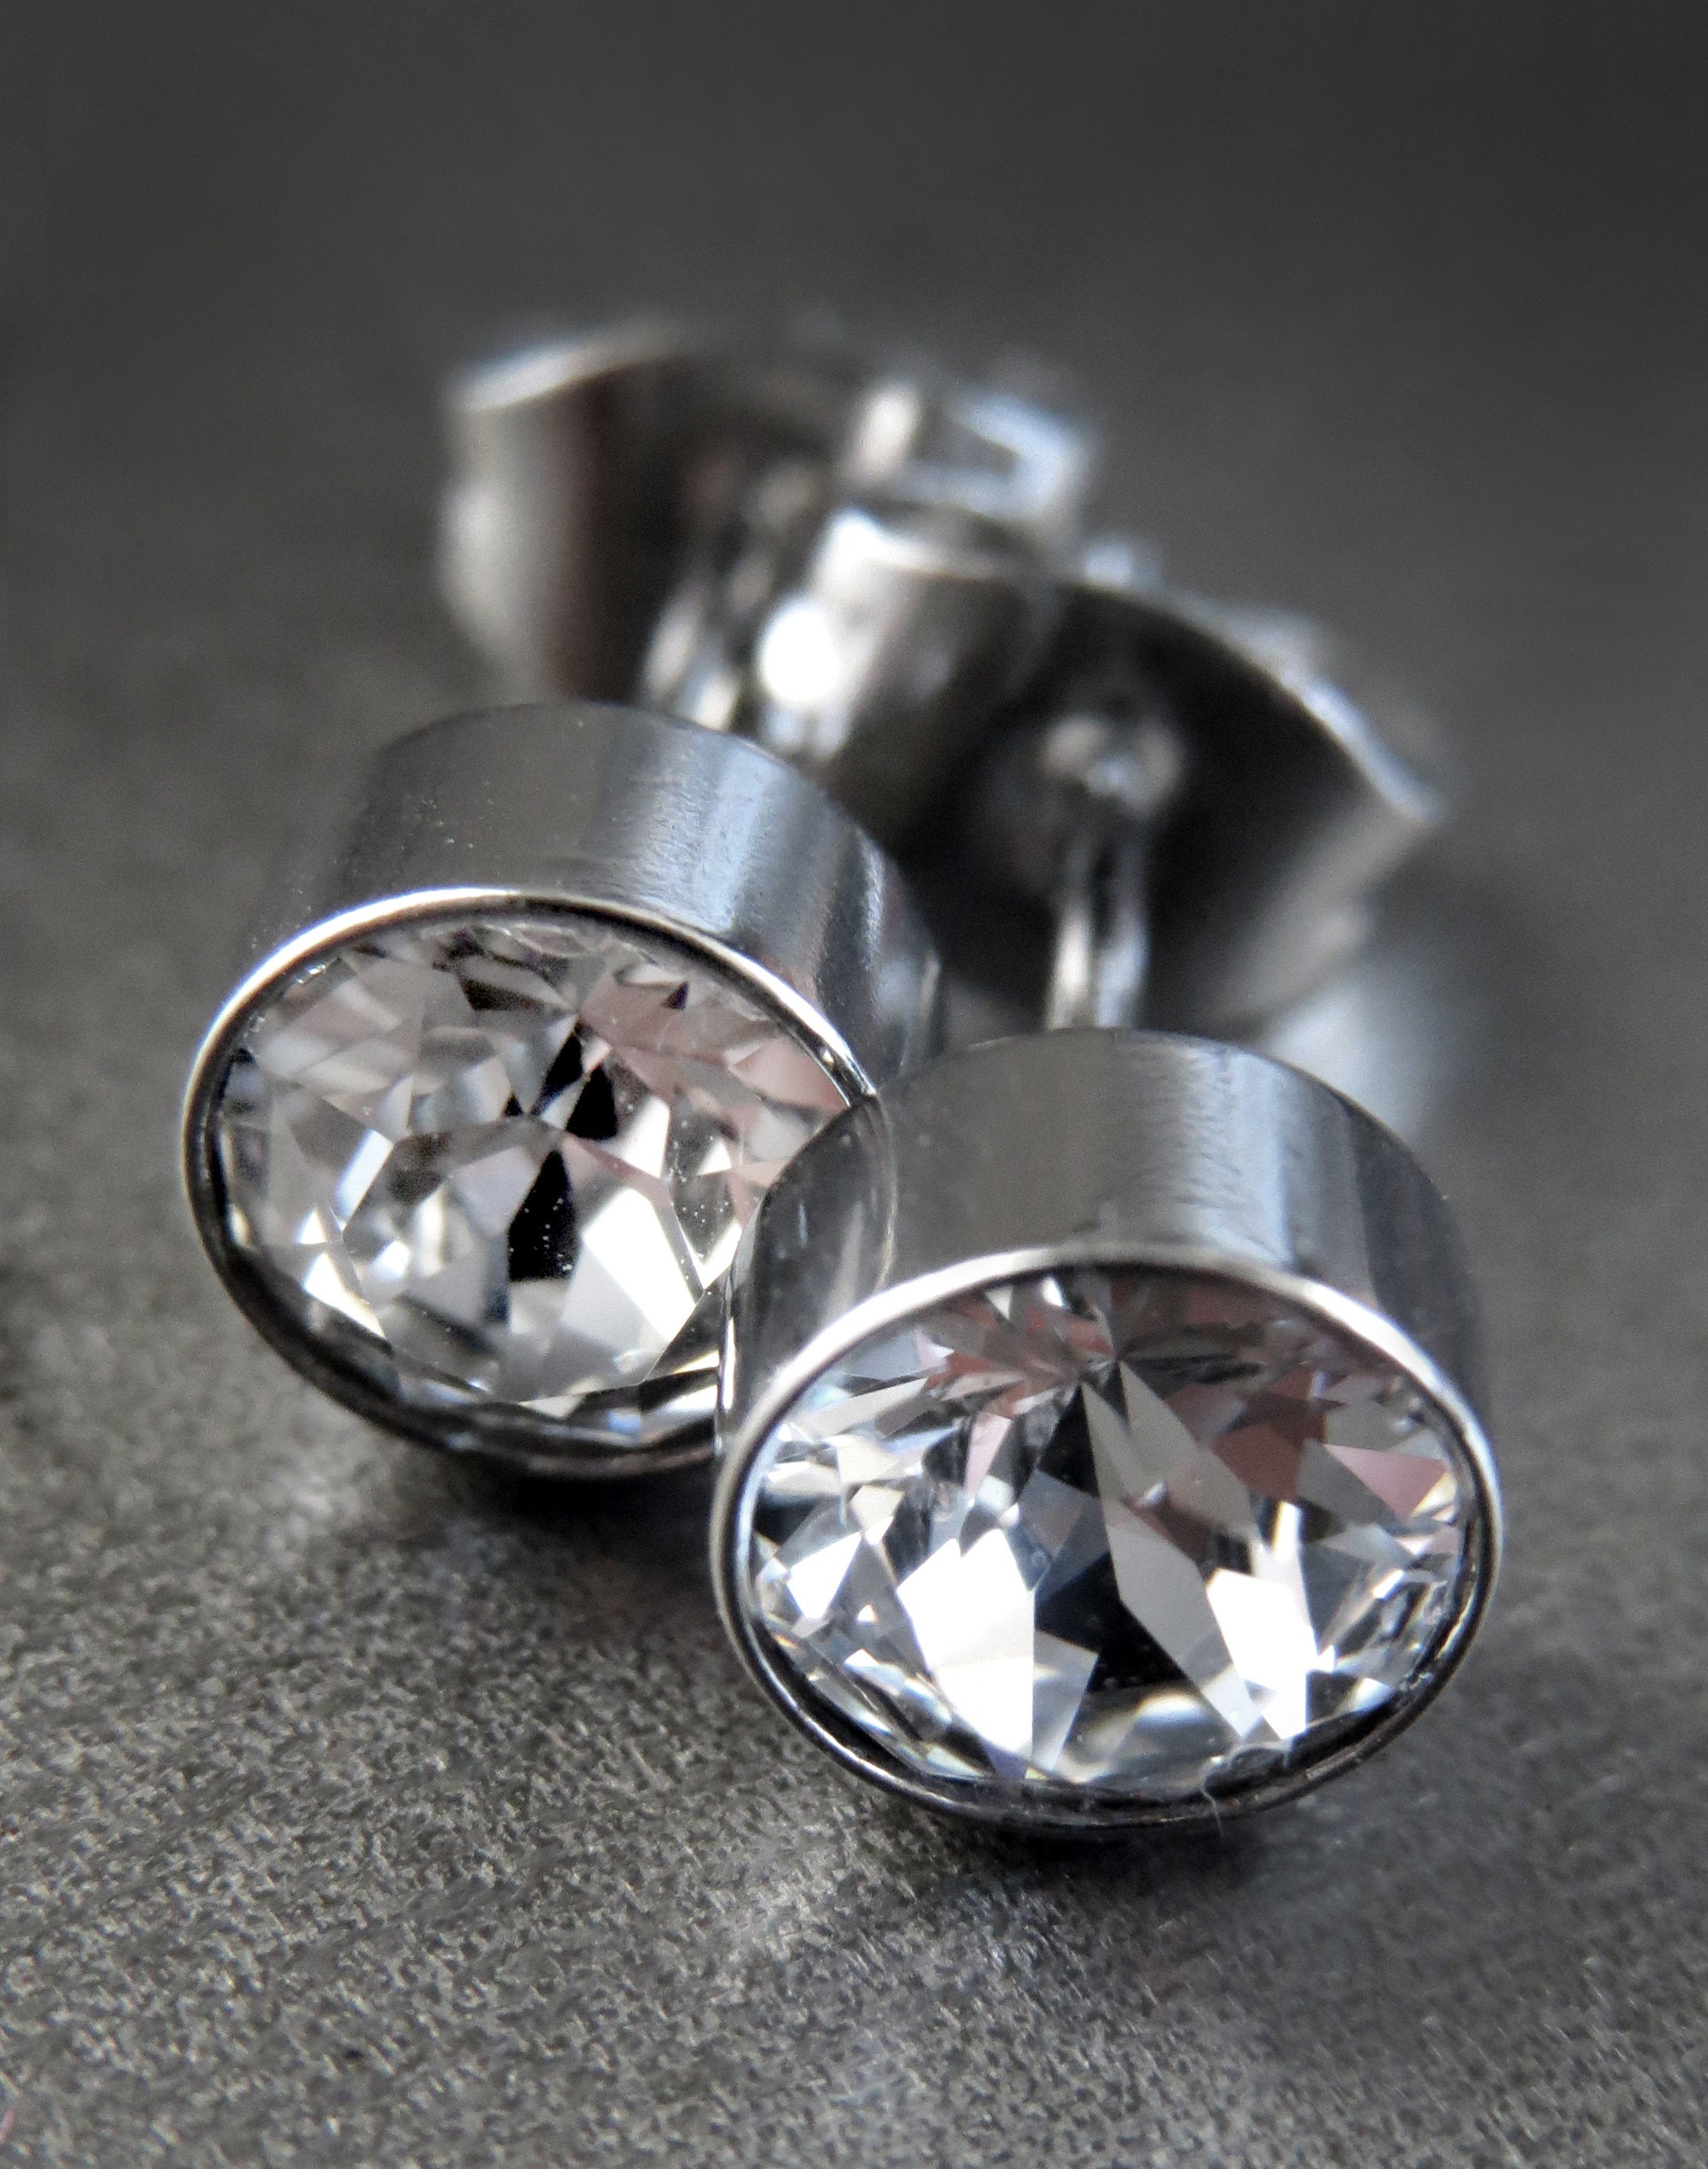 Clear Crystal Stud Earrings with Swarovski Crystal, Stainless Steel, Unisex Post Earrings, Mens Stud Earrings, Modern Stud Earrings